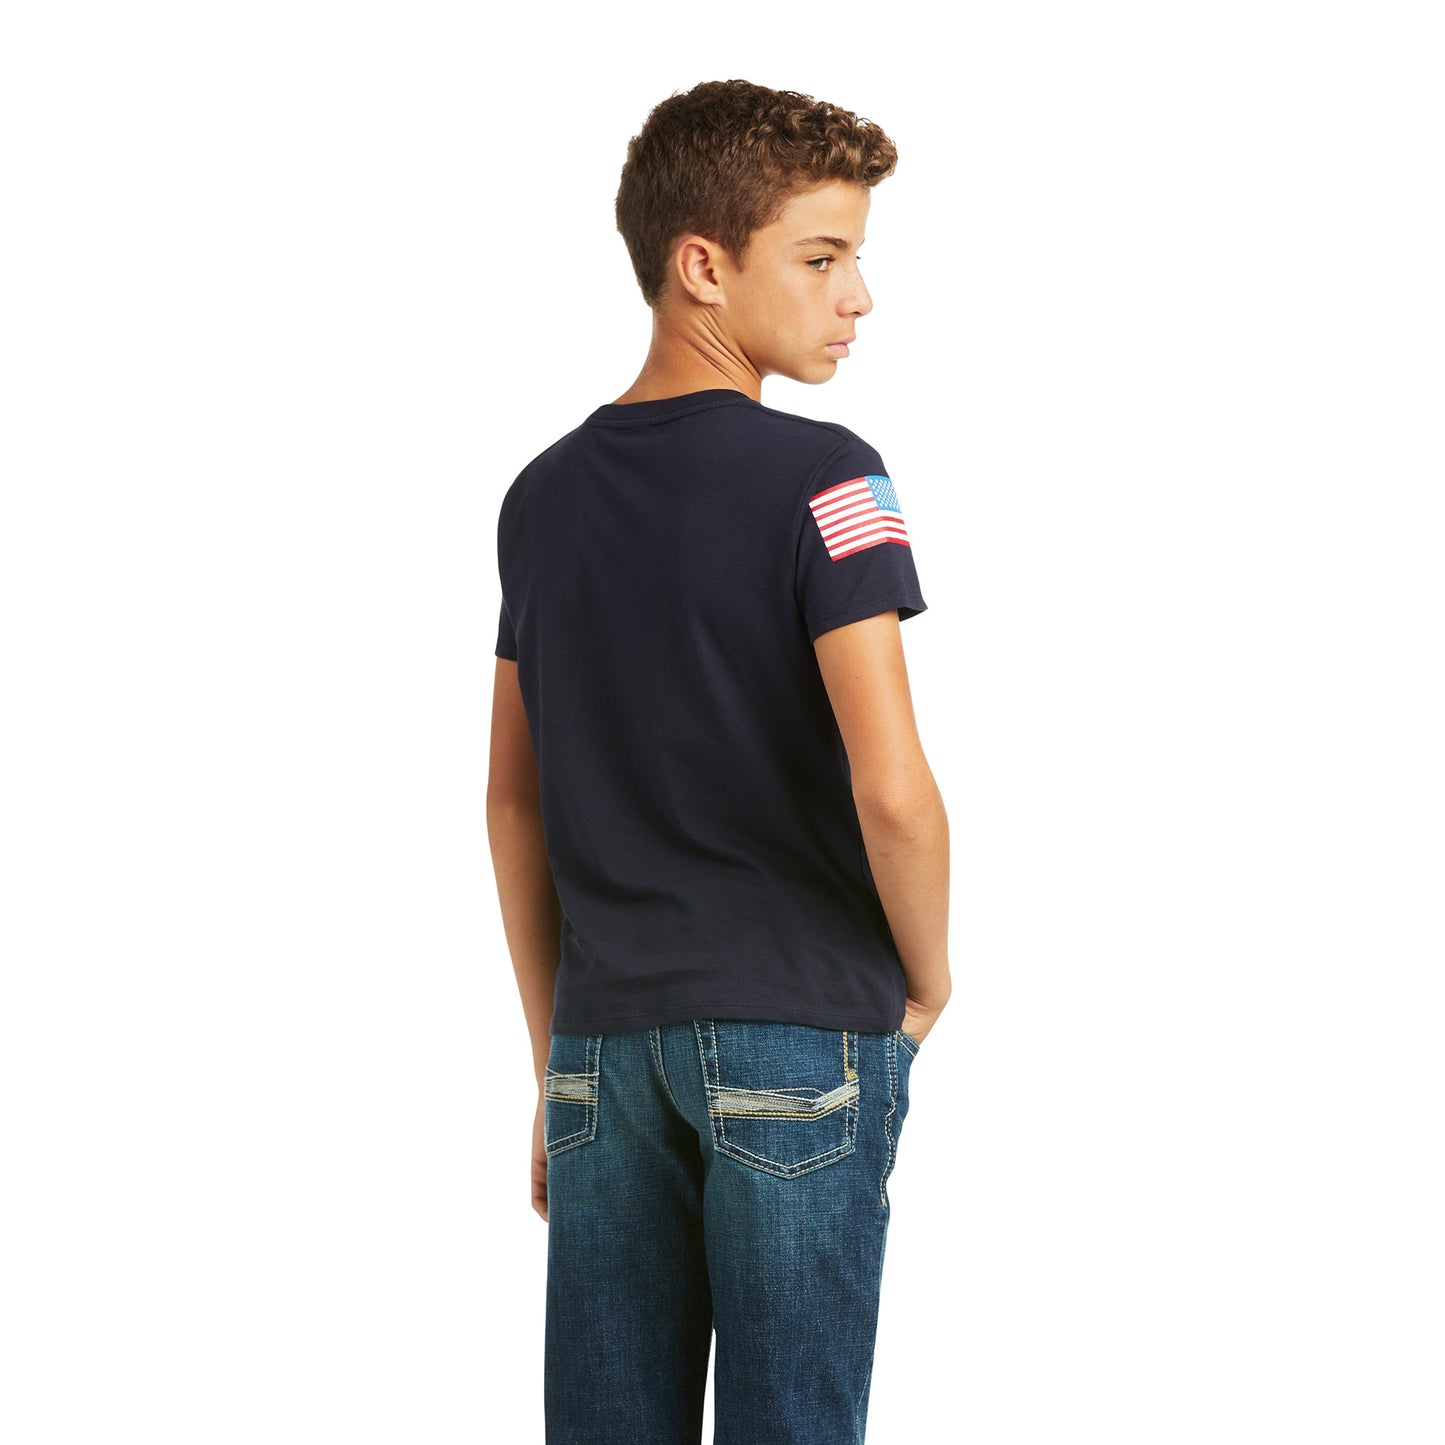 Ariat Children's Branded Short Sleeve USA Flag Navy T-Shirt 10037015